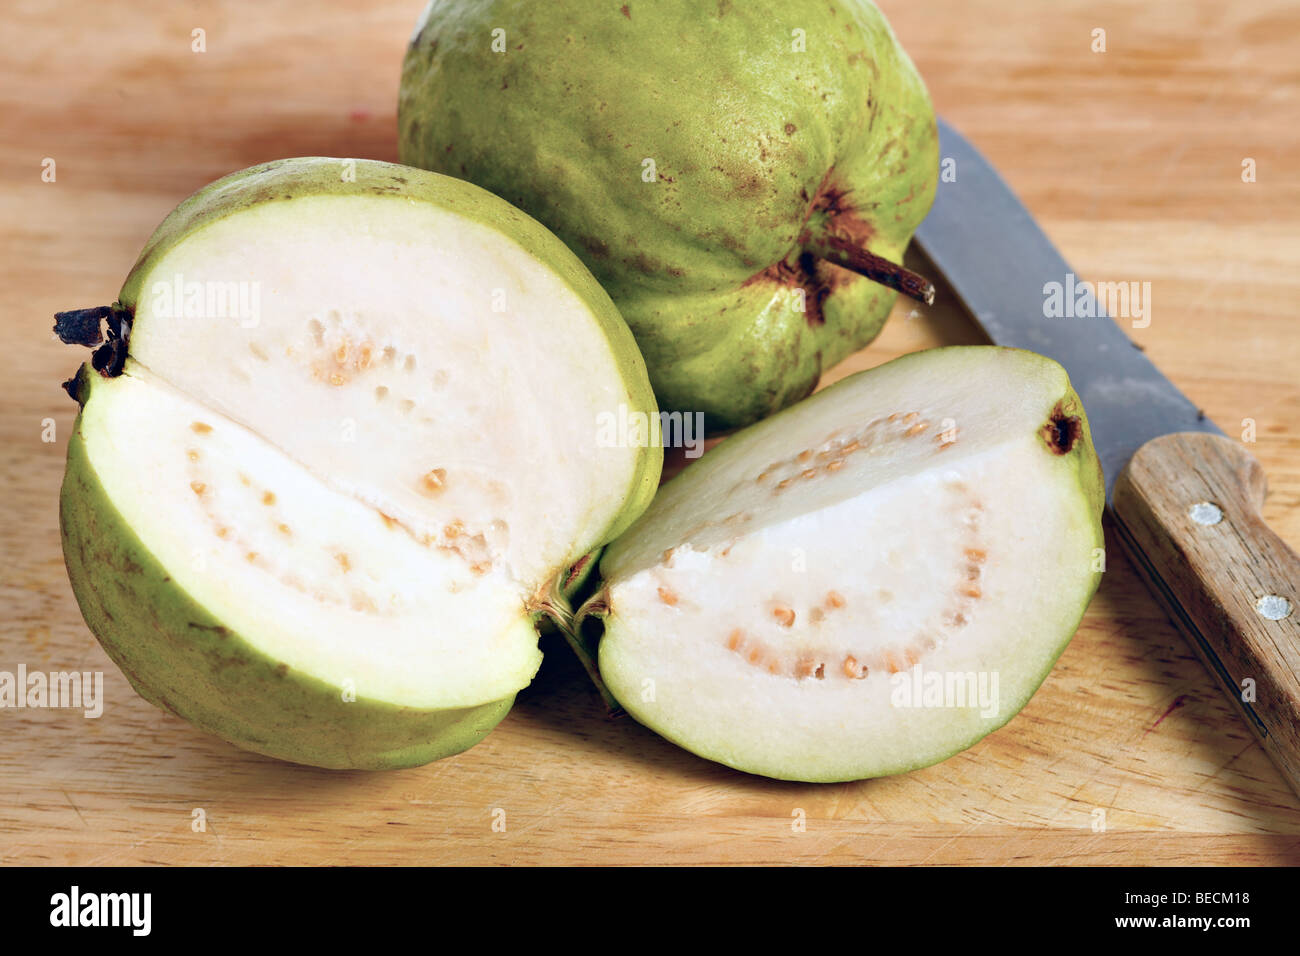 Un frutto guava, della politica Apple guaiava (Psidium guajava) varietà, tagliata aperta per mostrare la carne e i vinaccioli all'interno Foto Stock